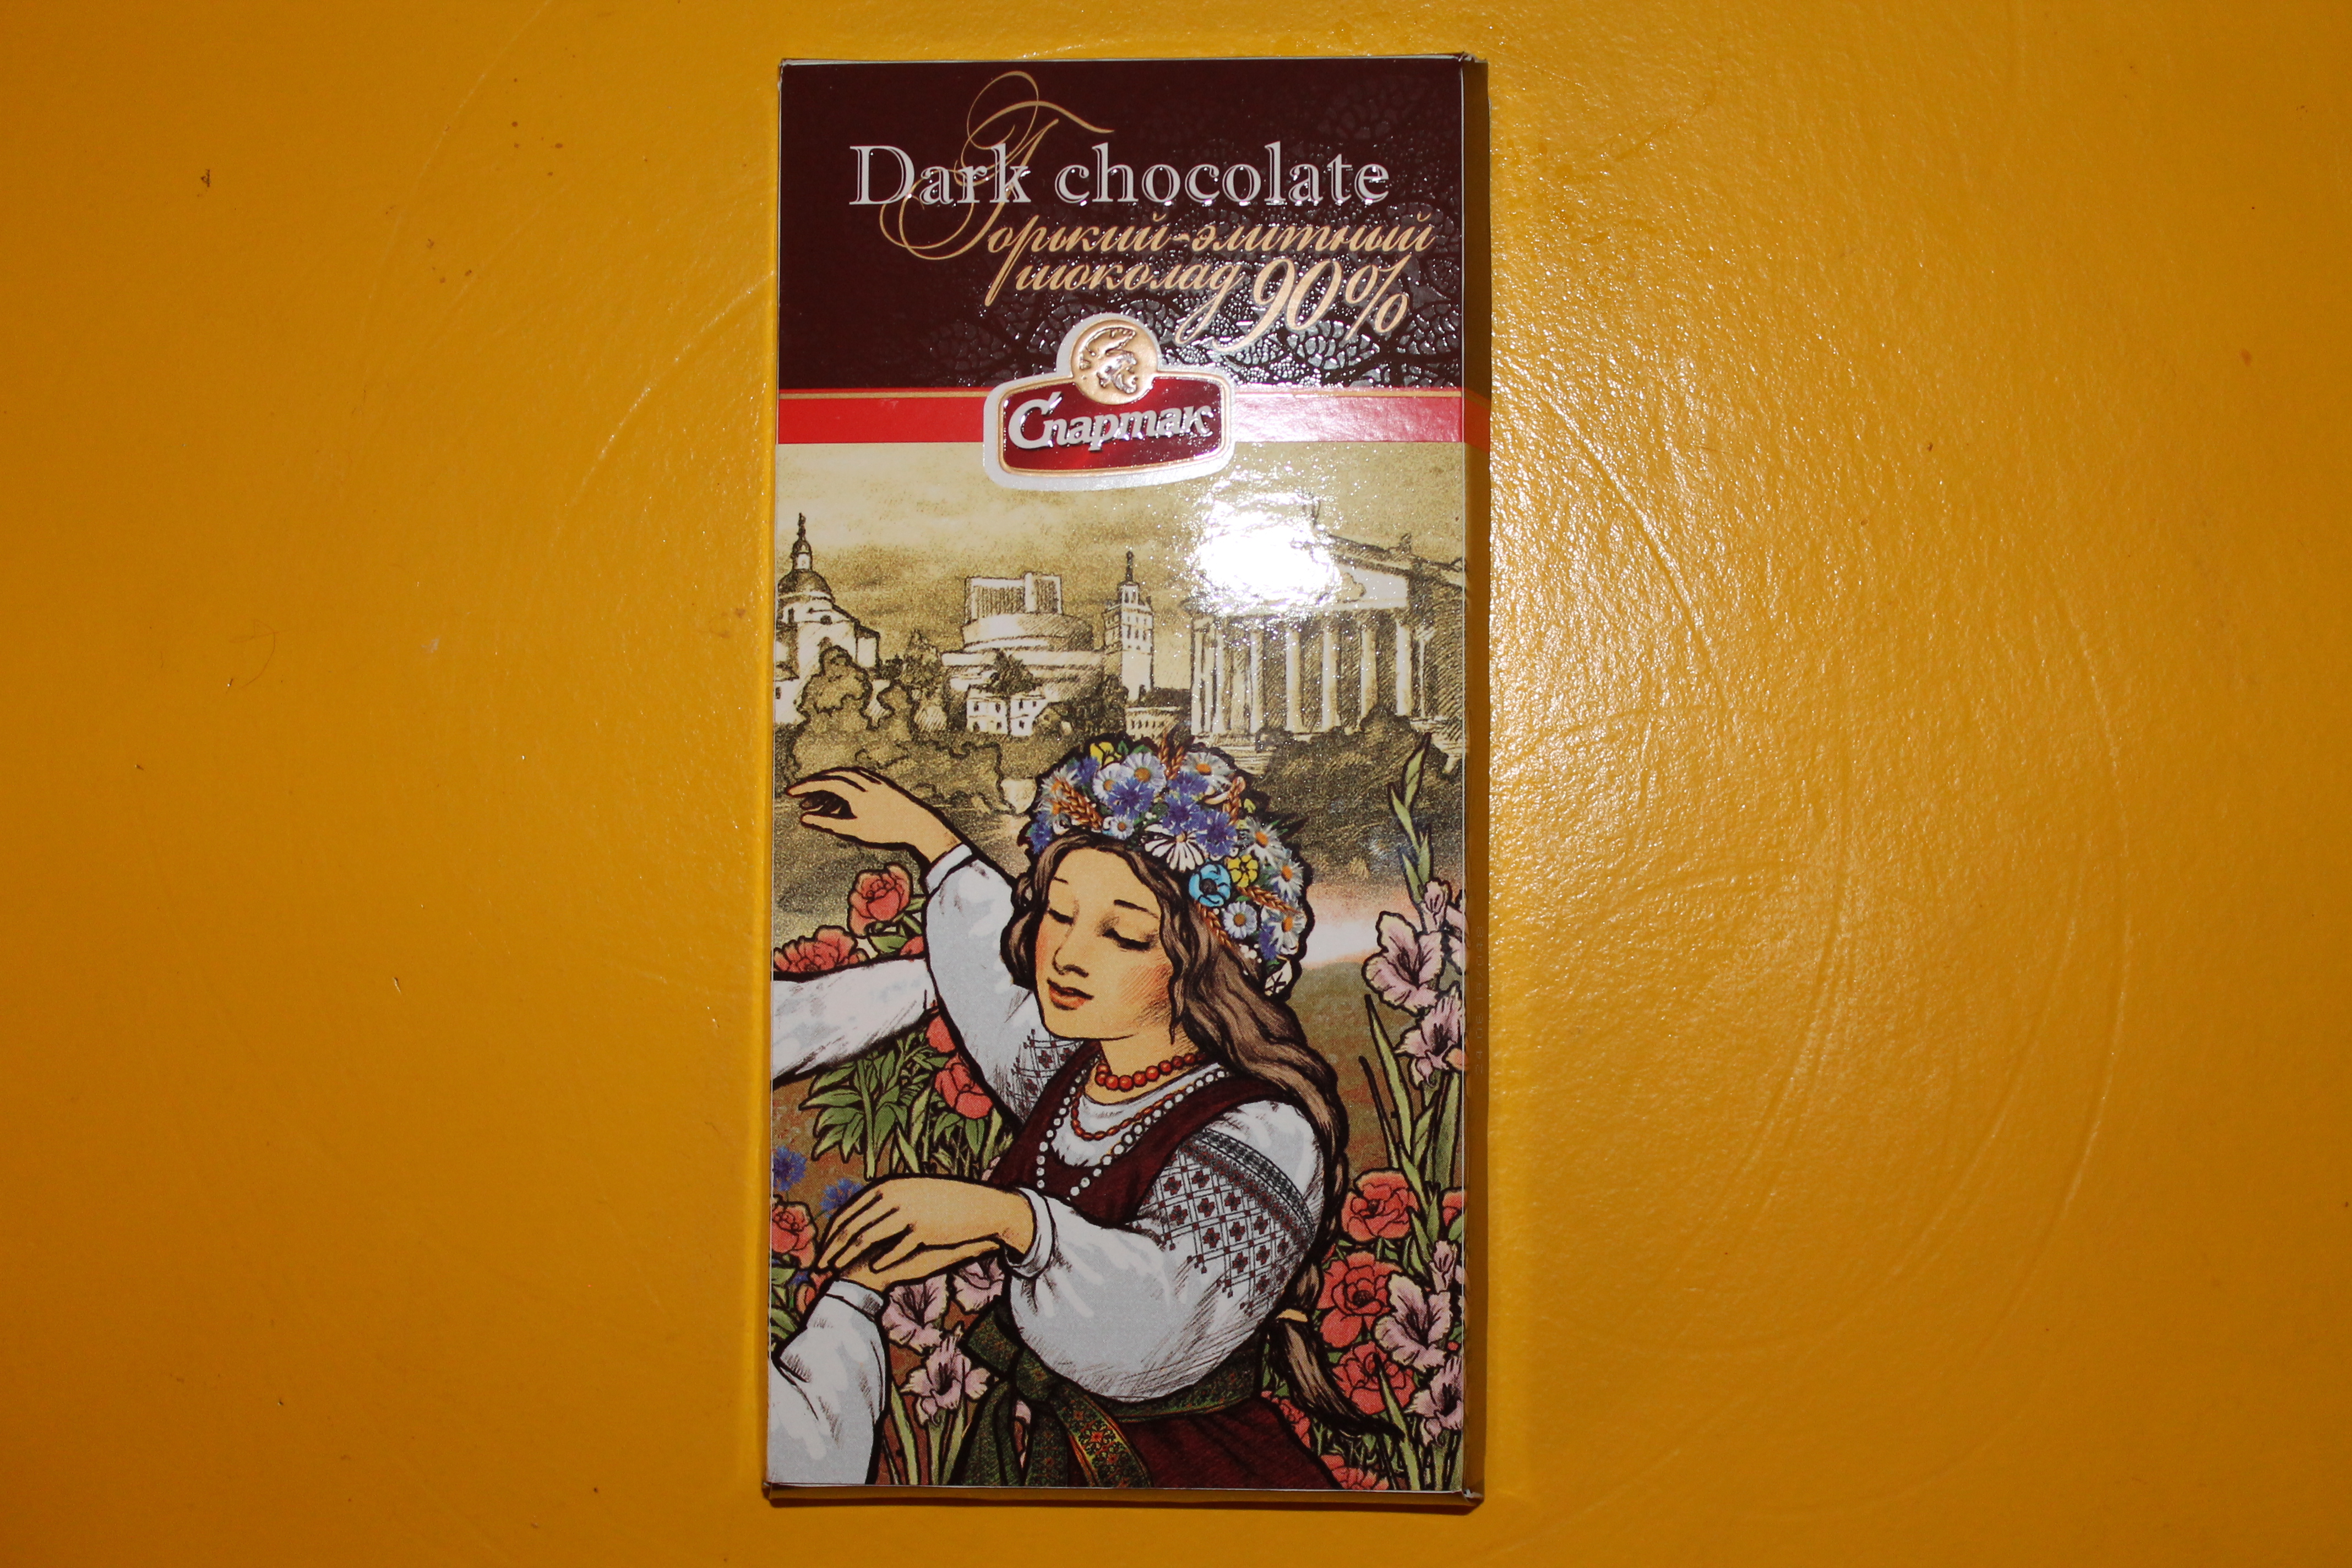 SPARTAK - Tablette de chocolat noir 90%